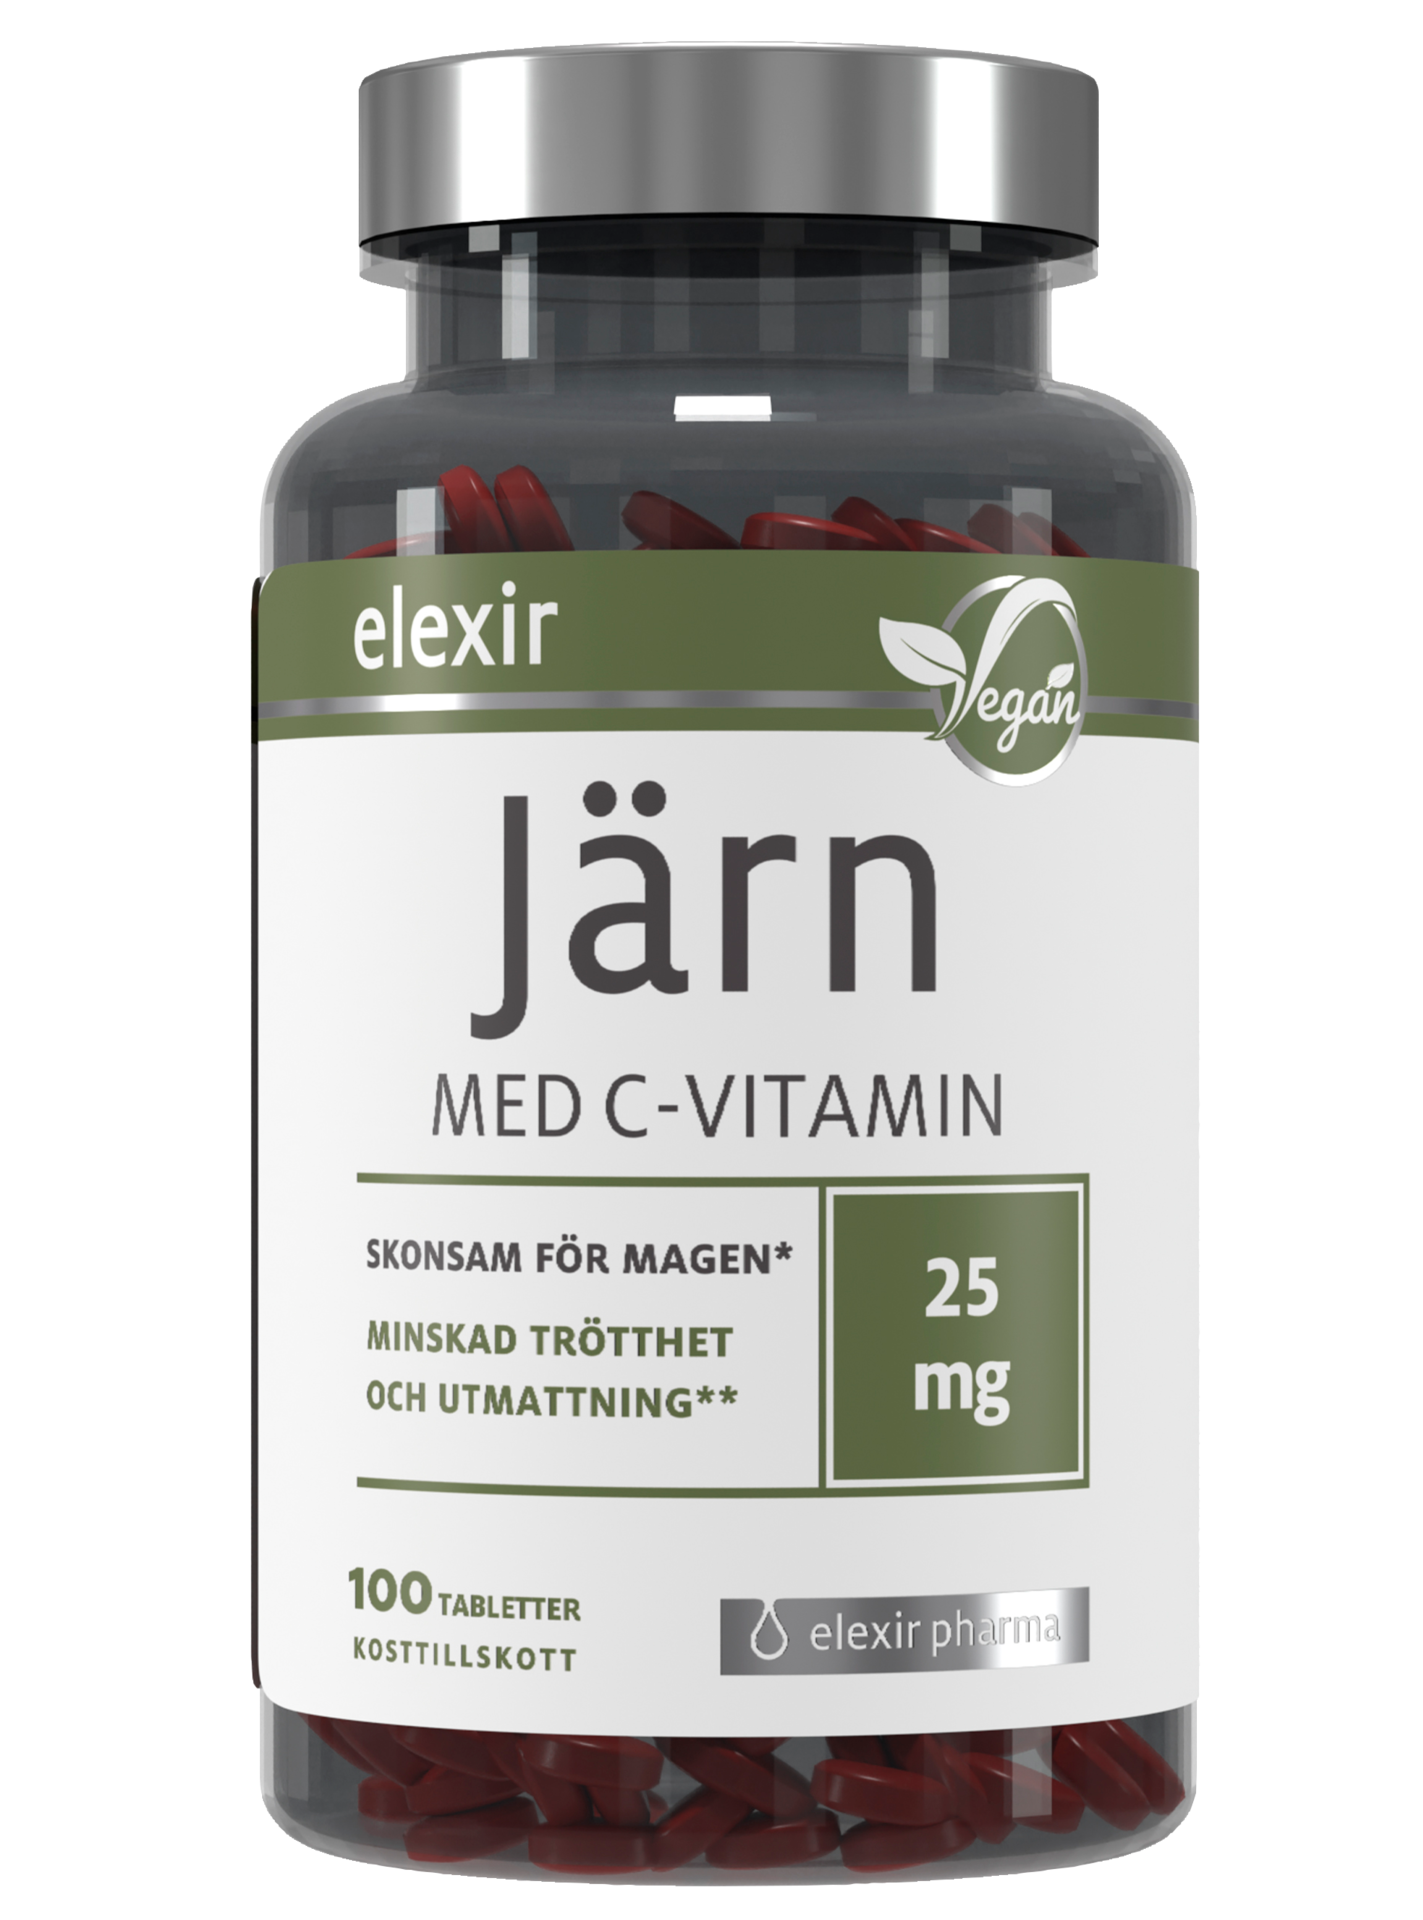 Elexir Pharma Järn Med C-vitamin Vegan 100 tabletter